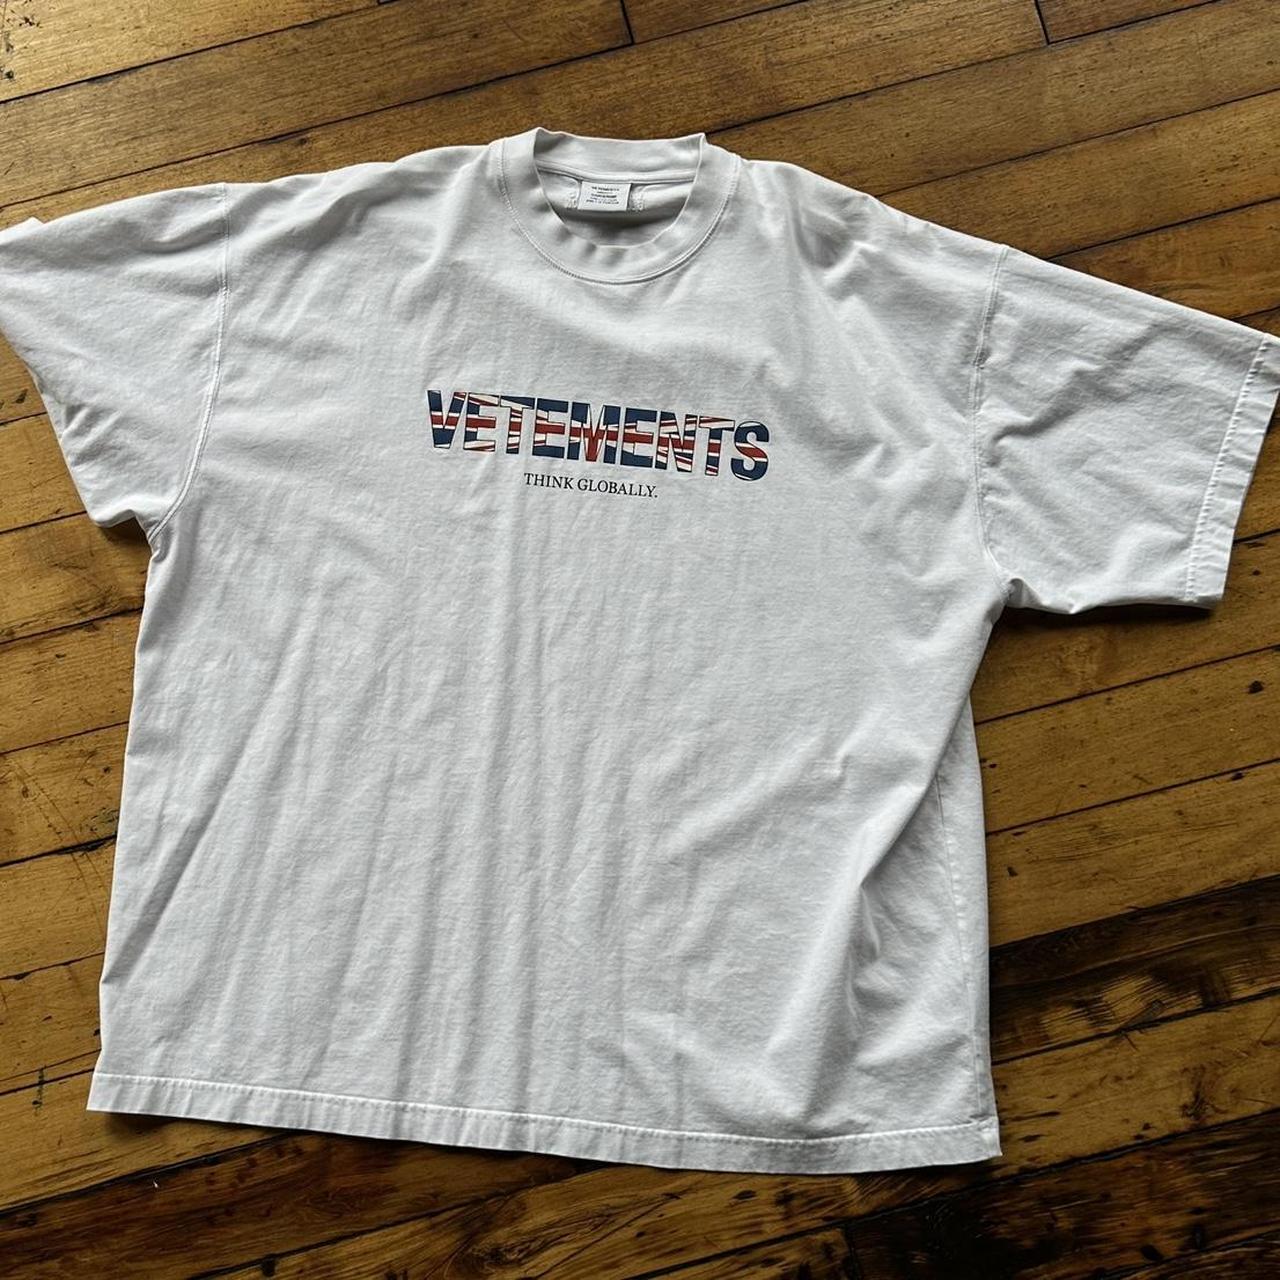 【売筋】vetements think globally ロゴ　tシャツ トップス